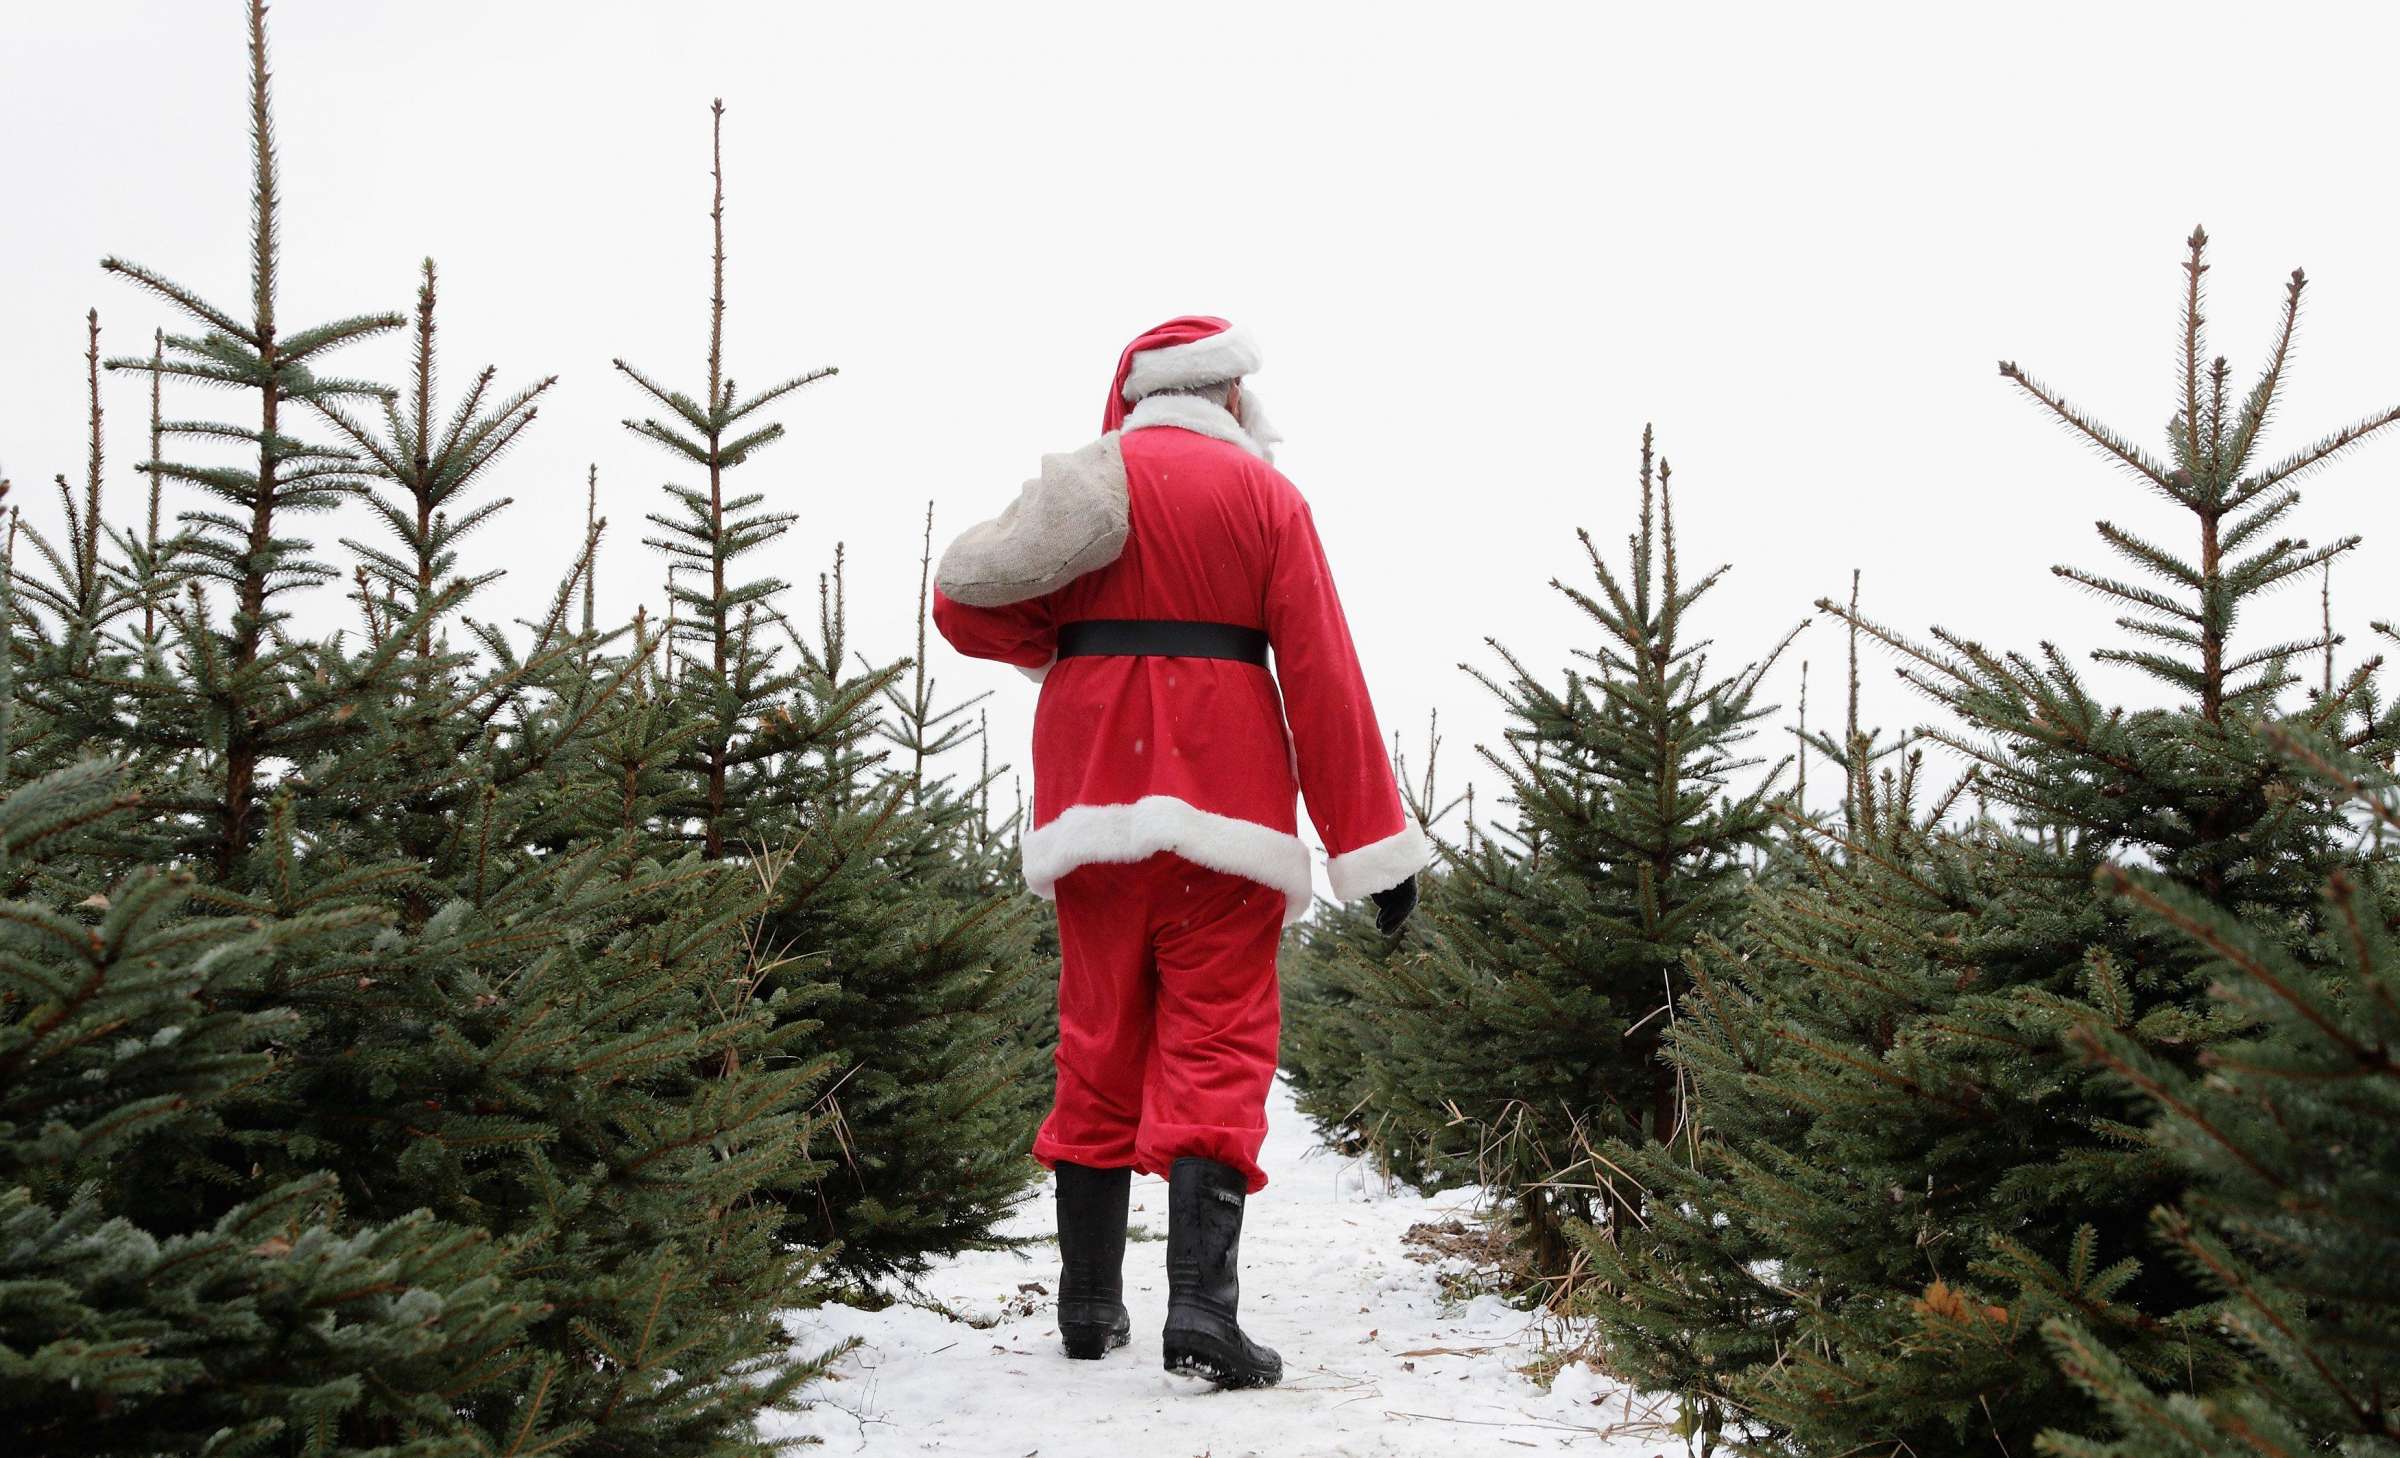 Background image: Christmas Trees Santa